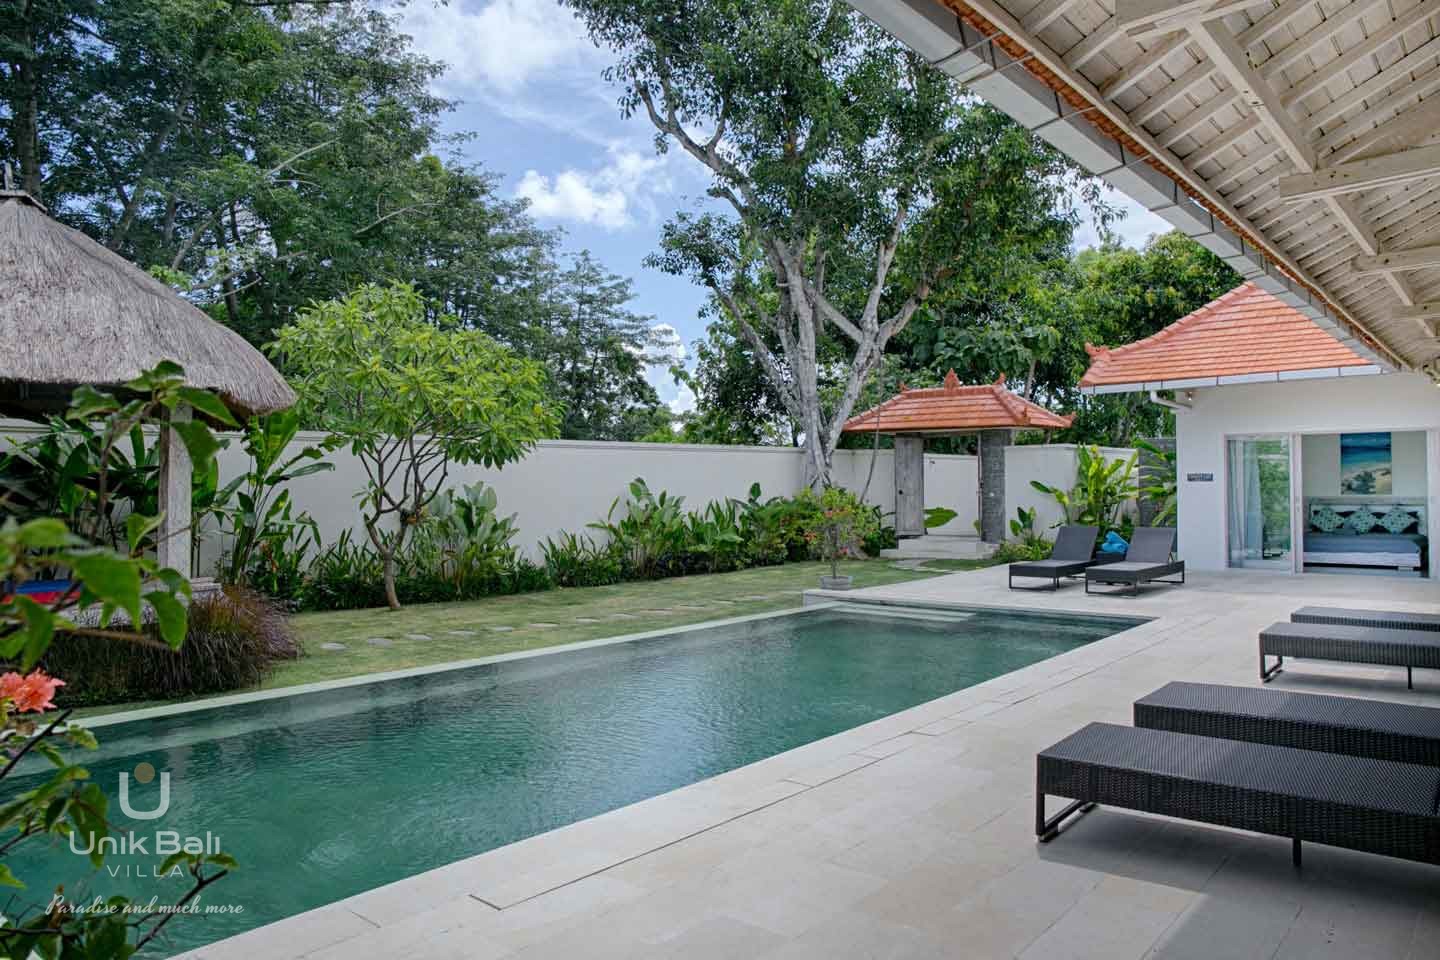 Uni Bali Villa Alexandra For Rent (13)a